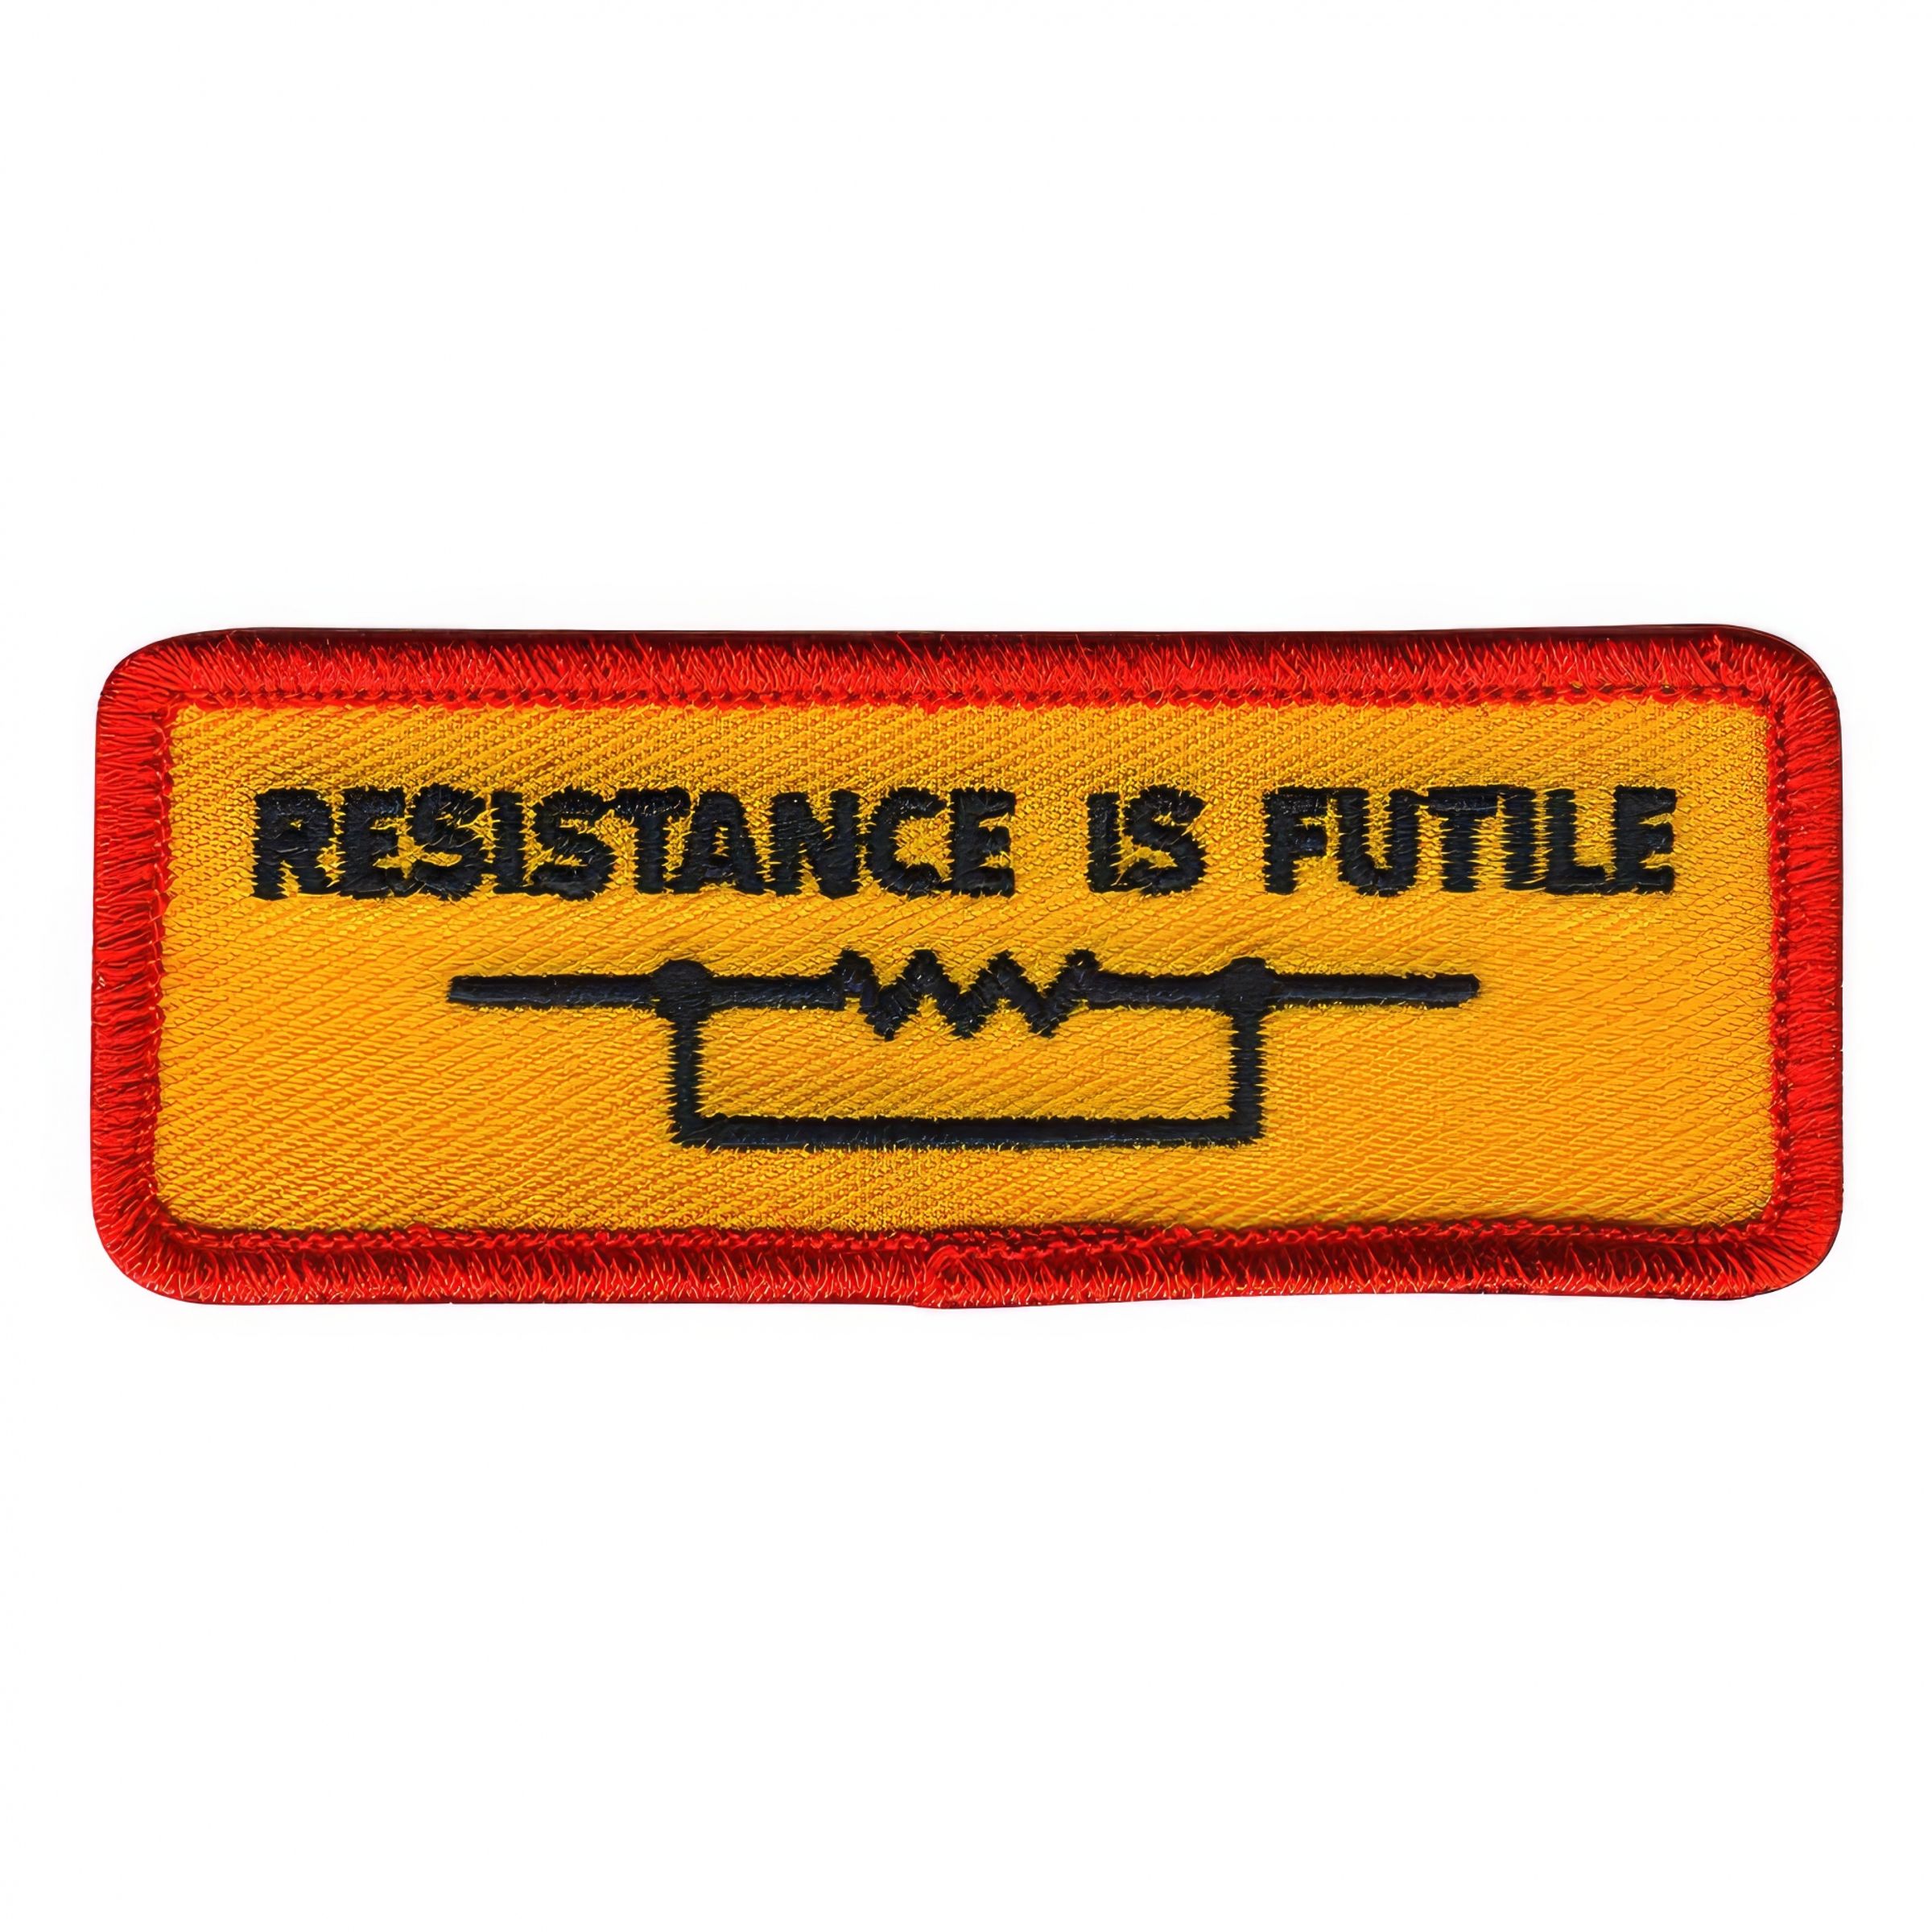 Tygmärke Resistance is Futile